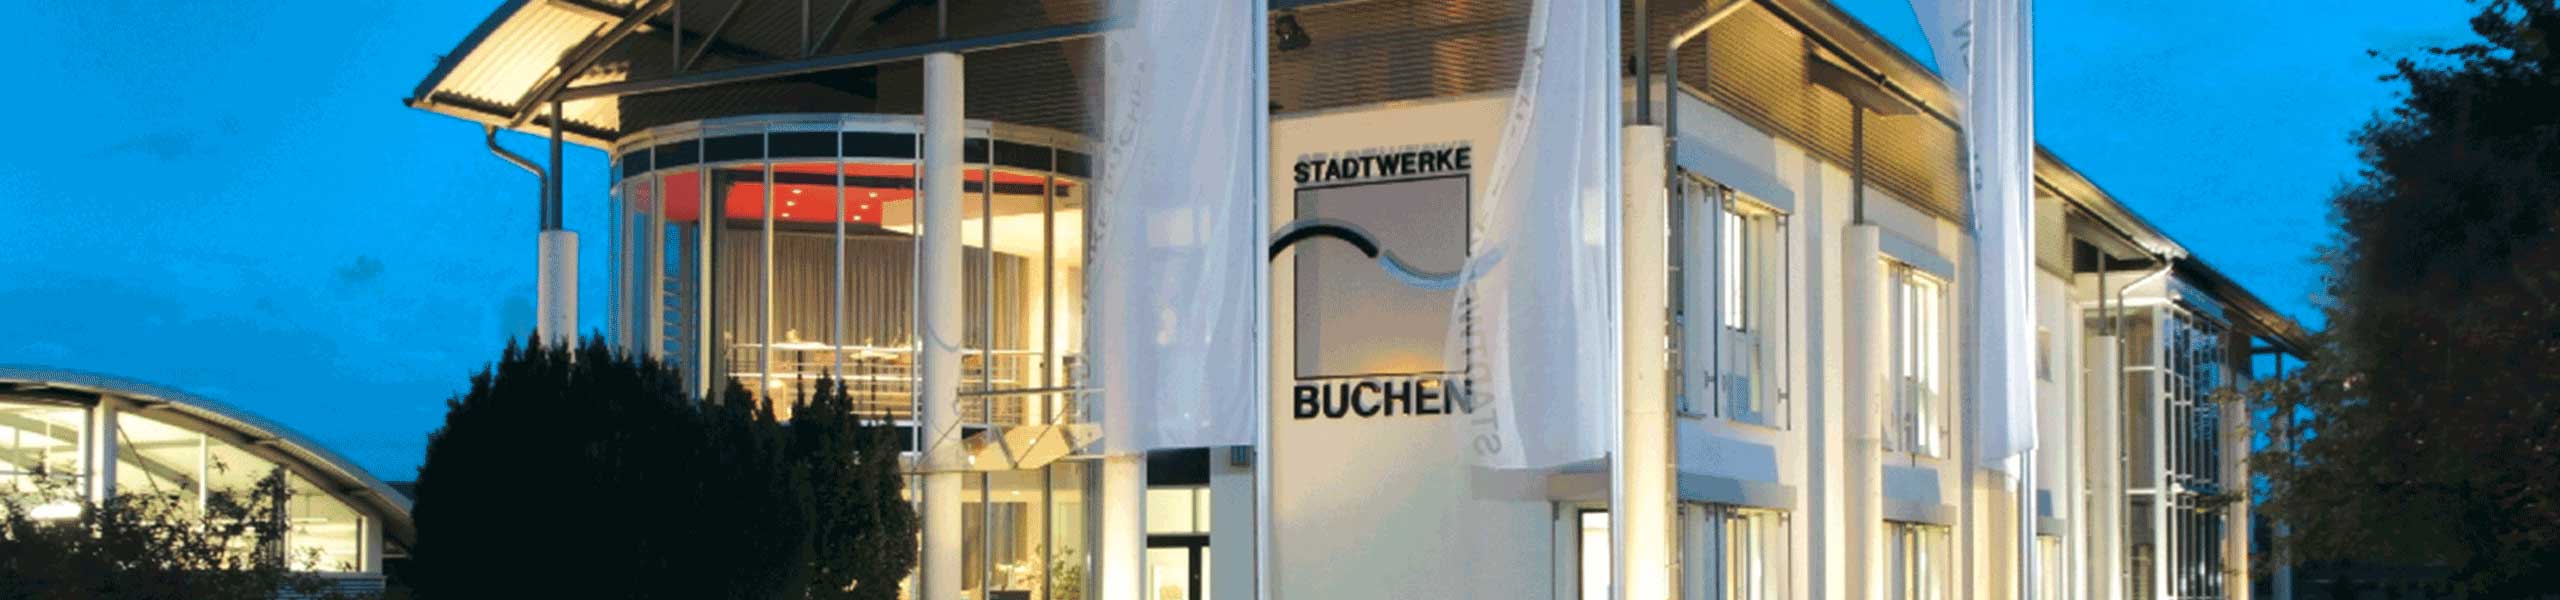 Stadtwerke Buchen GmbH & Co KG - Ihr Versorger vor Ort - Planauskunft